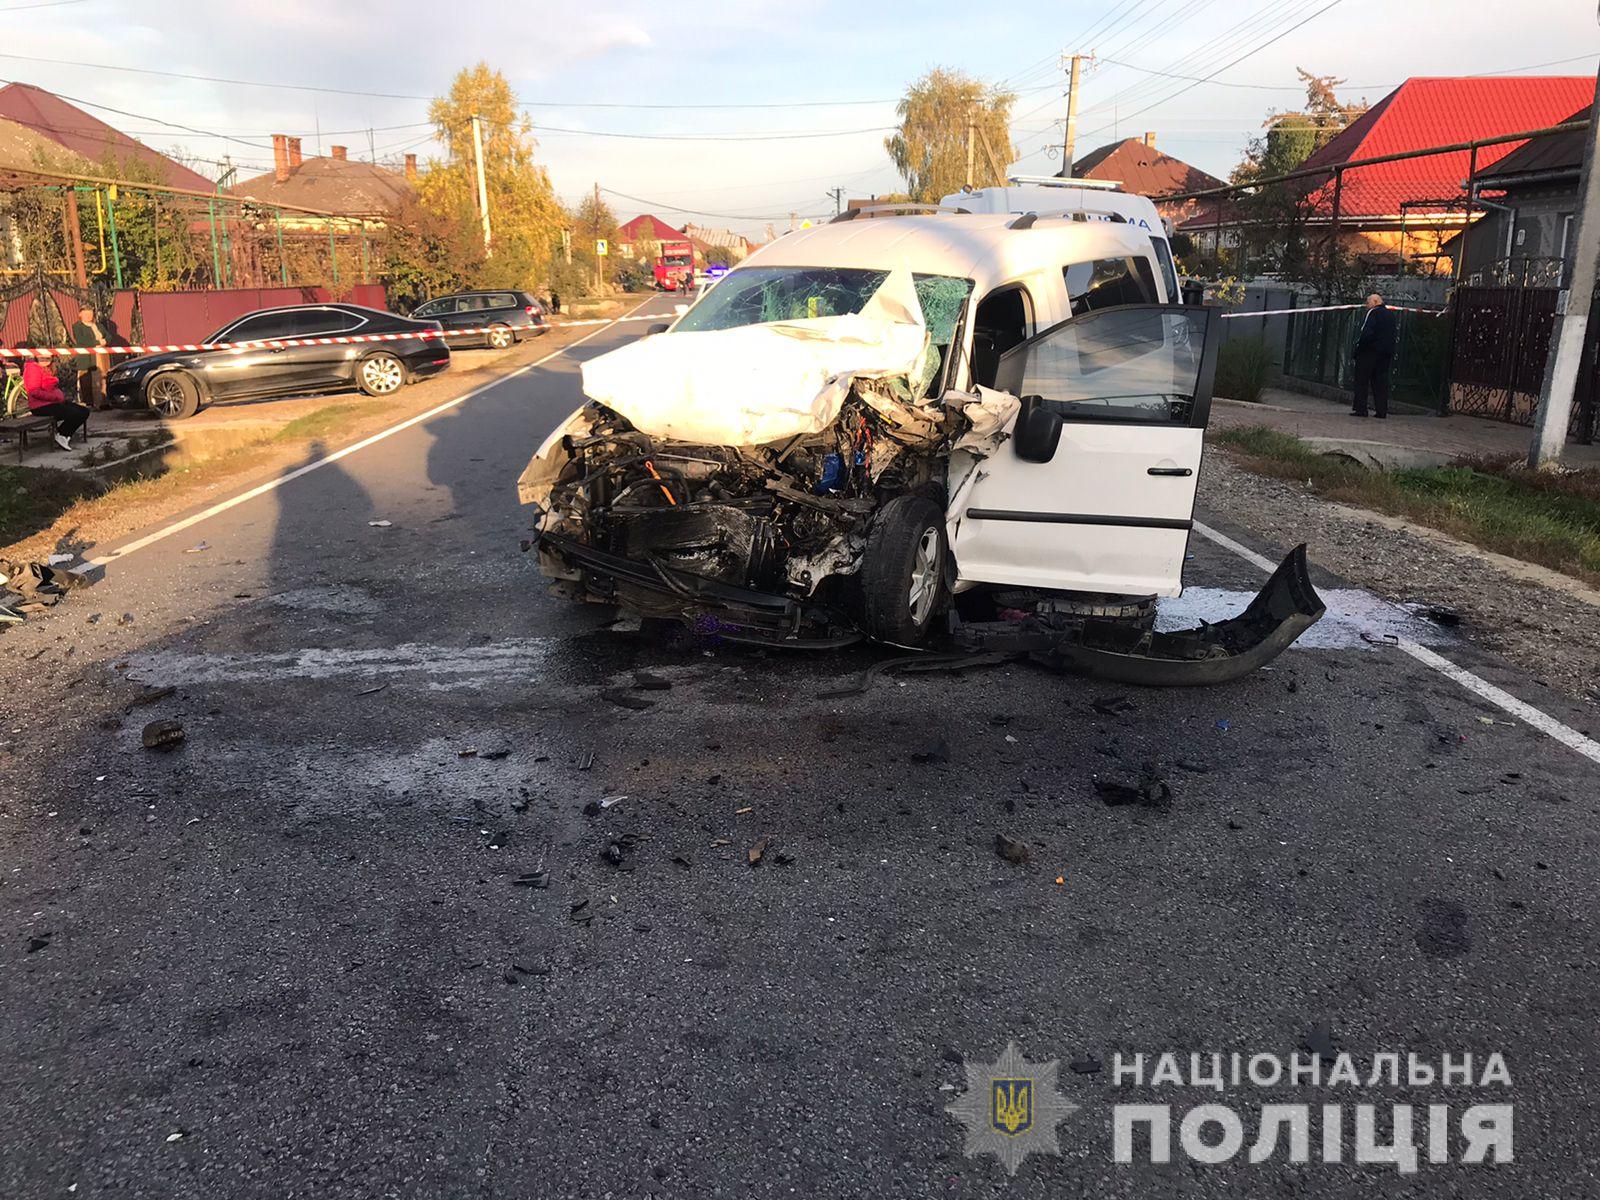 Слідчі поліції Мукачівщини відкрили кримінальне провадження за фактом ДТП, у якій загинув водій автомобіля «Volkswagen Caddy», а водій та малолітні пасажири з іншого авто отримали тілесні ушкодження.